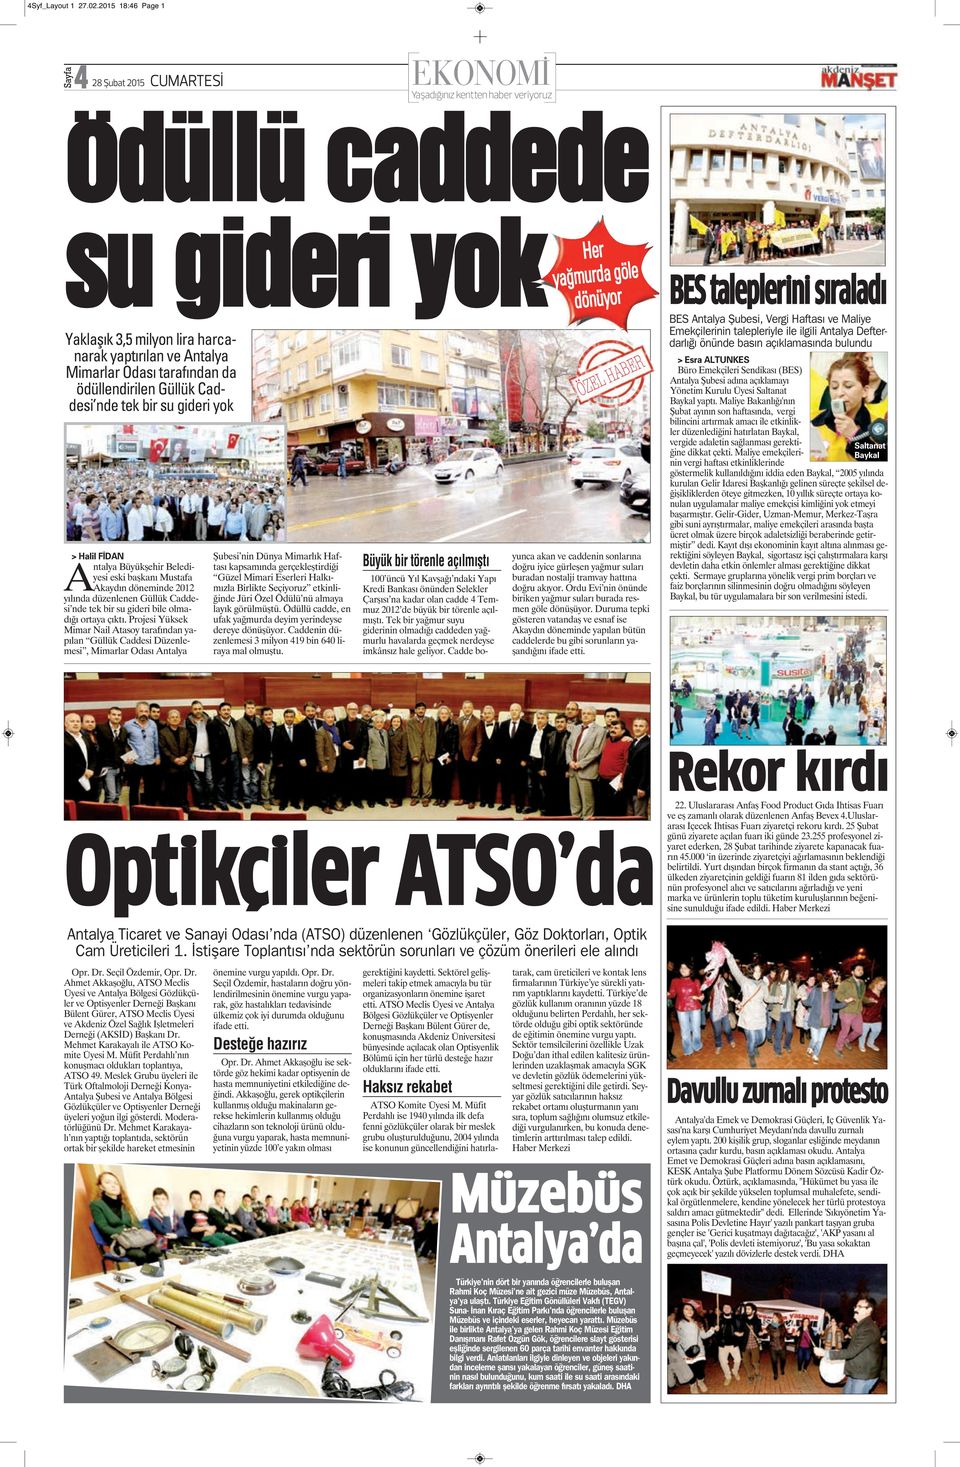 nde tek bir su gideri yok > Halil FİDAN Antalya Büyükşehir Belediyesi eski başkanı Mustafa Akaydın döneminde 2012 yılında düzenlenen Güllük Caddesi nde tek bir su gideri bile olmadığı ortaya çıktı.